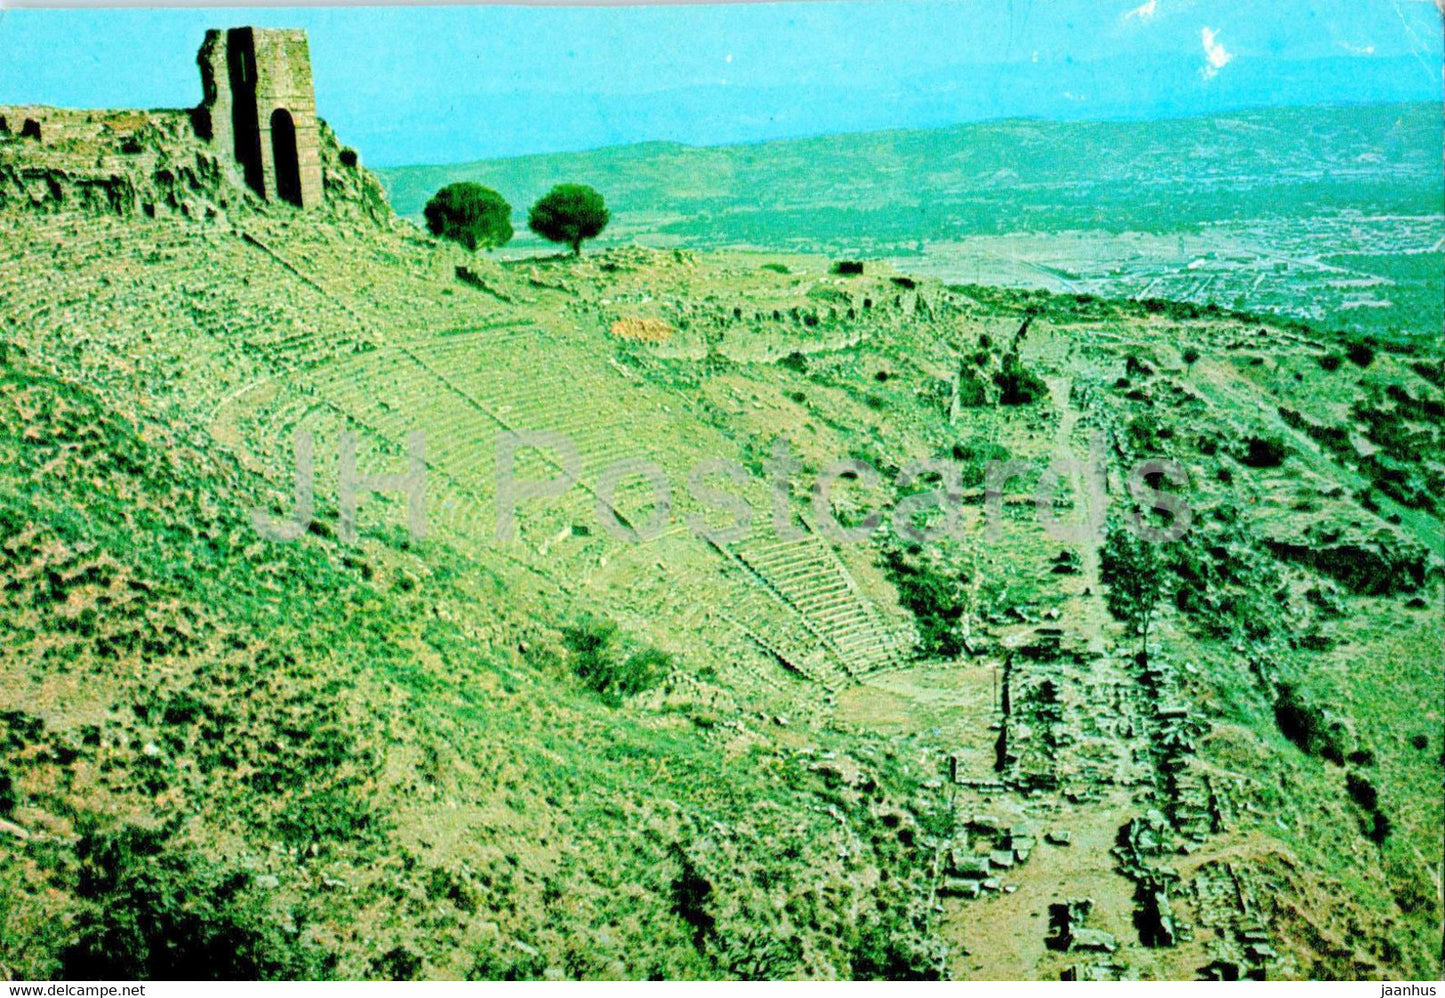 Pergamum - Theatre of Acropolis - ancient world - 3011 - Turkey - unused - JH Postcards